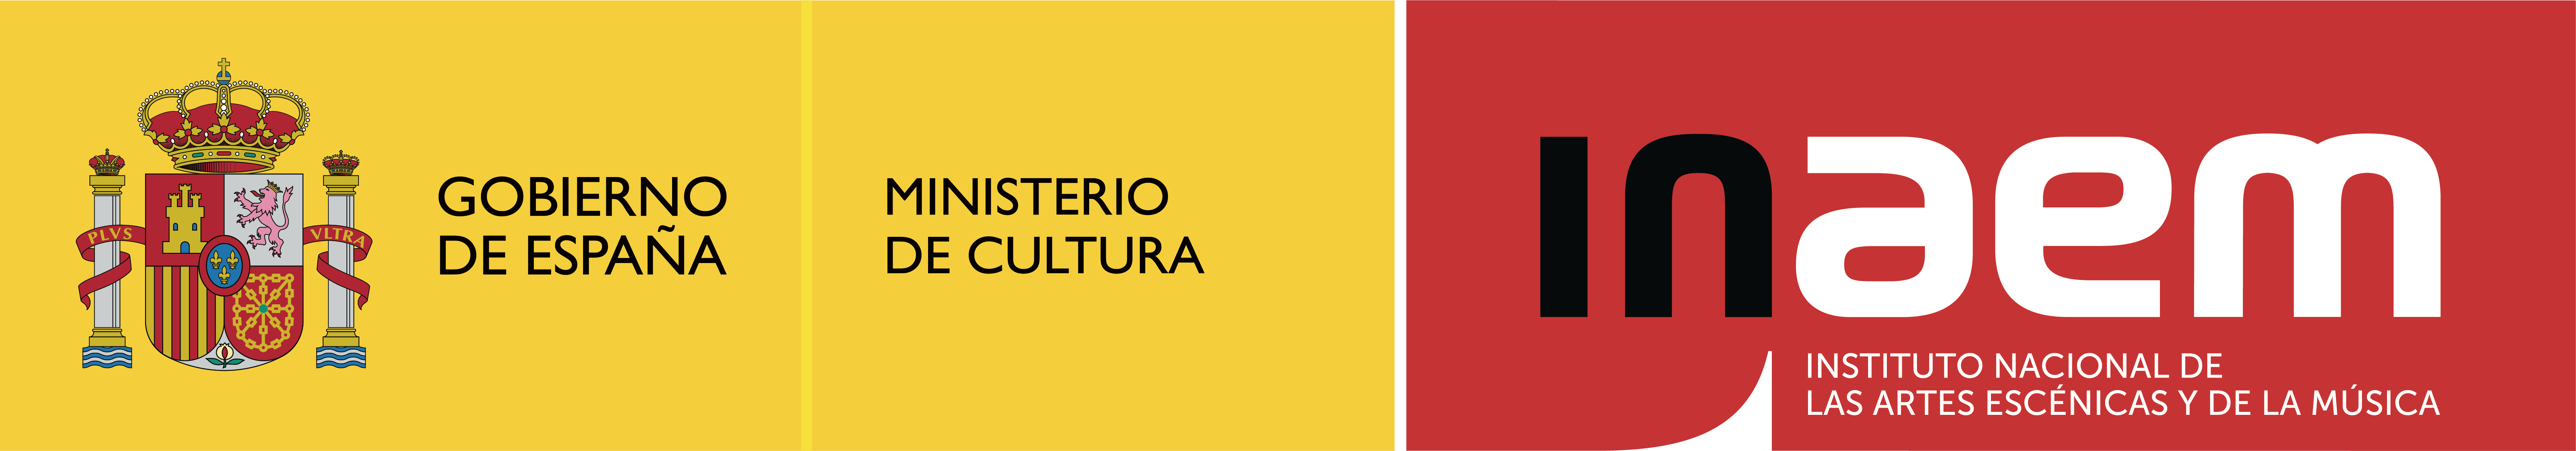 Logotipo con el escudo de el Gobierno de España